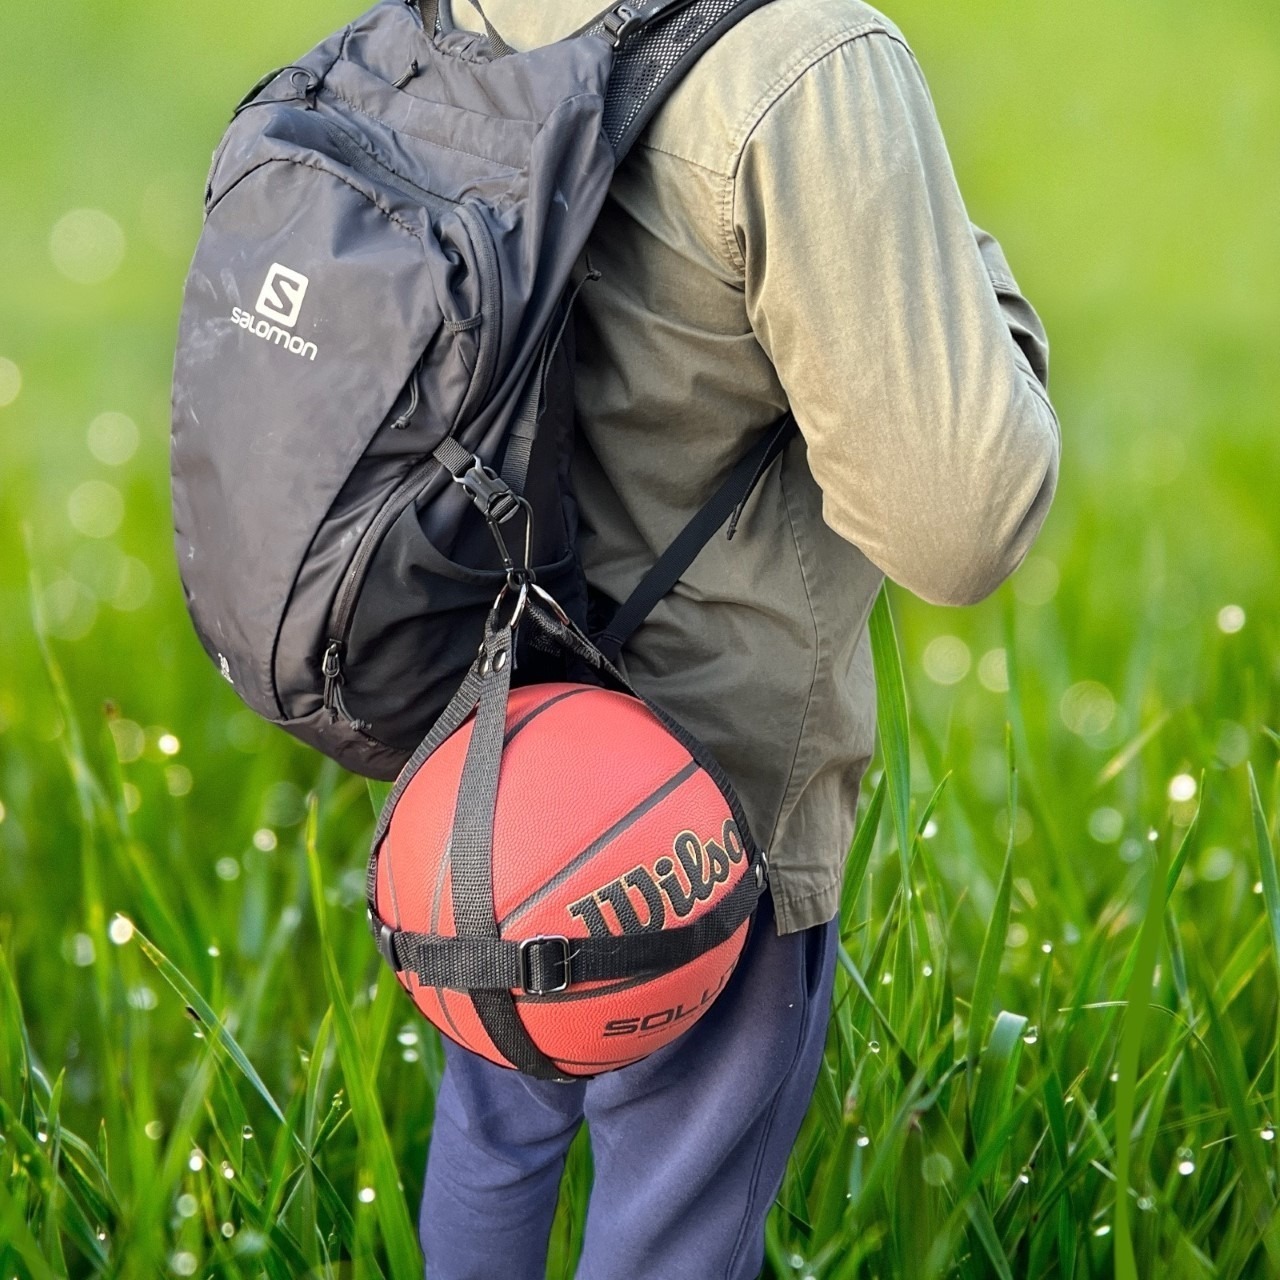 Burger blomst fra nu af Sportstasker til basket og fodbold - Fedt design og praktisk taske til  bolde.